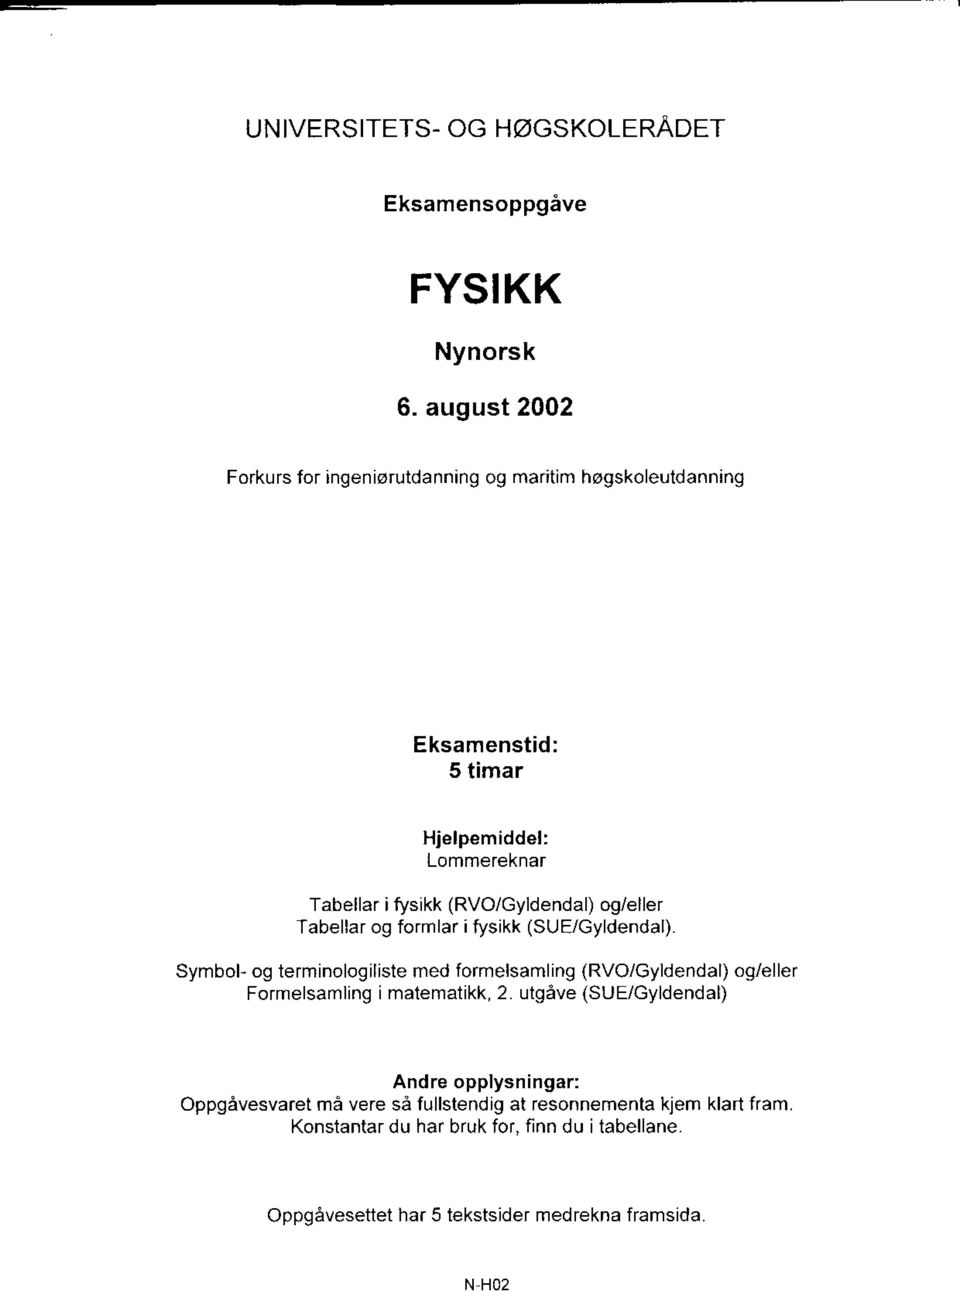 (RVO/Gyldendal) og/eller Tabellar og formlar ifysikk (SUE/Gyldendal).